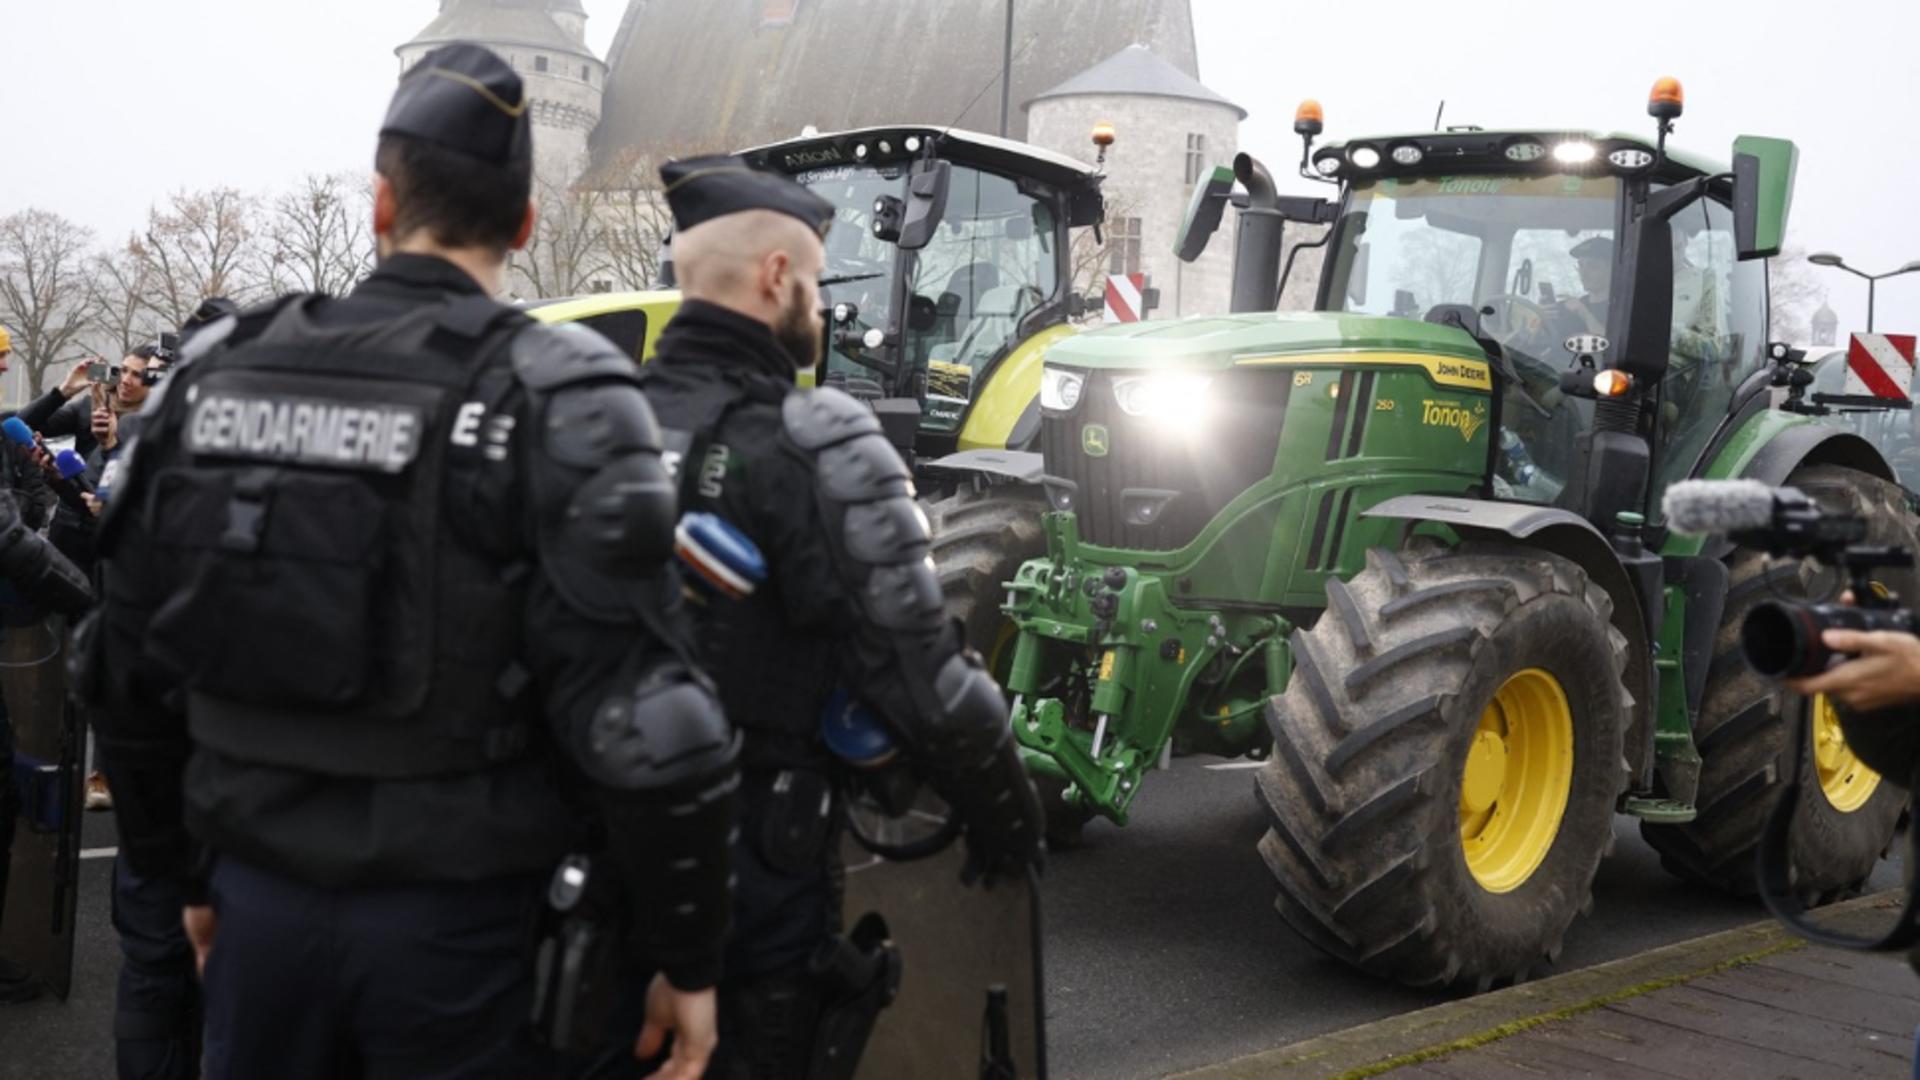 Fermierii amenință din nou cu proteste care pot paraliza economia. Care sunt noile lor nemulțumiri